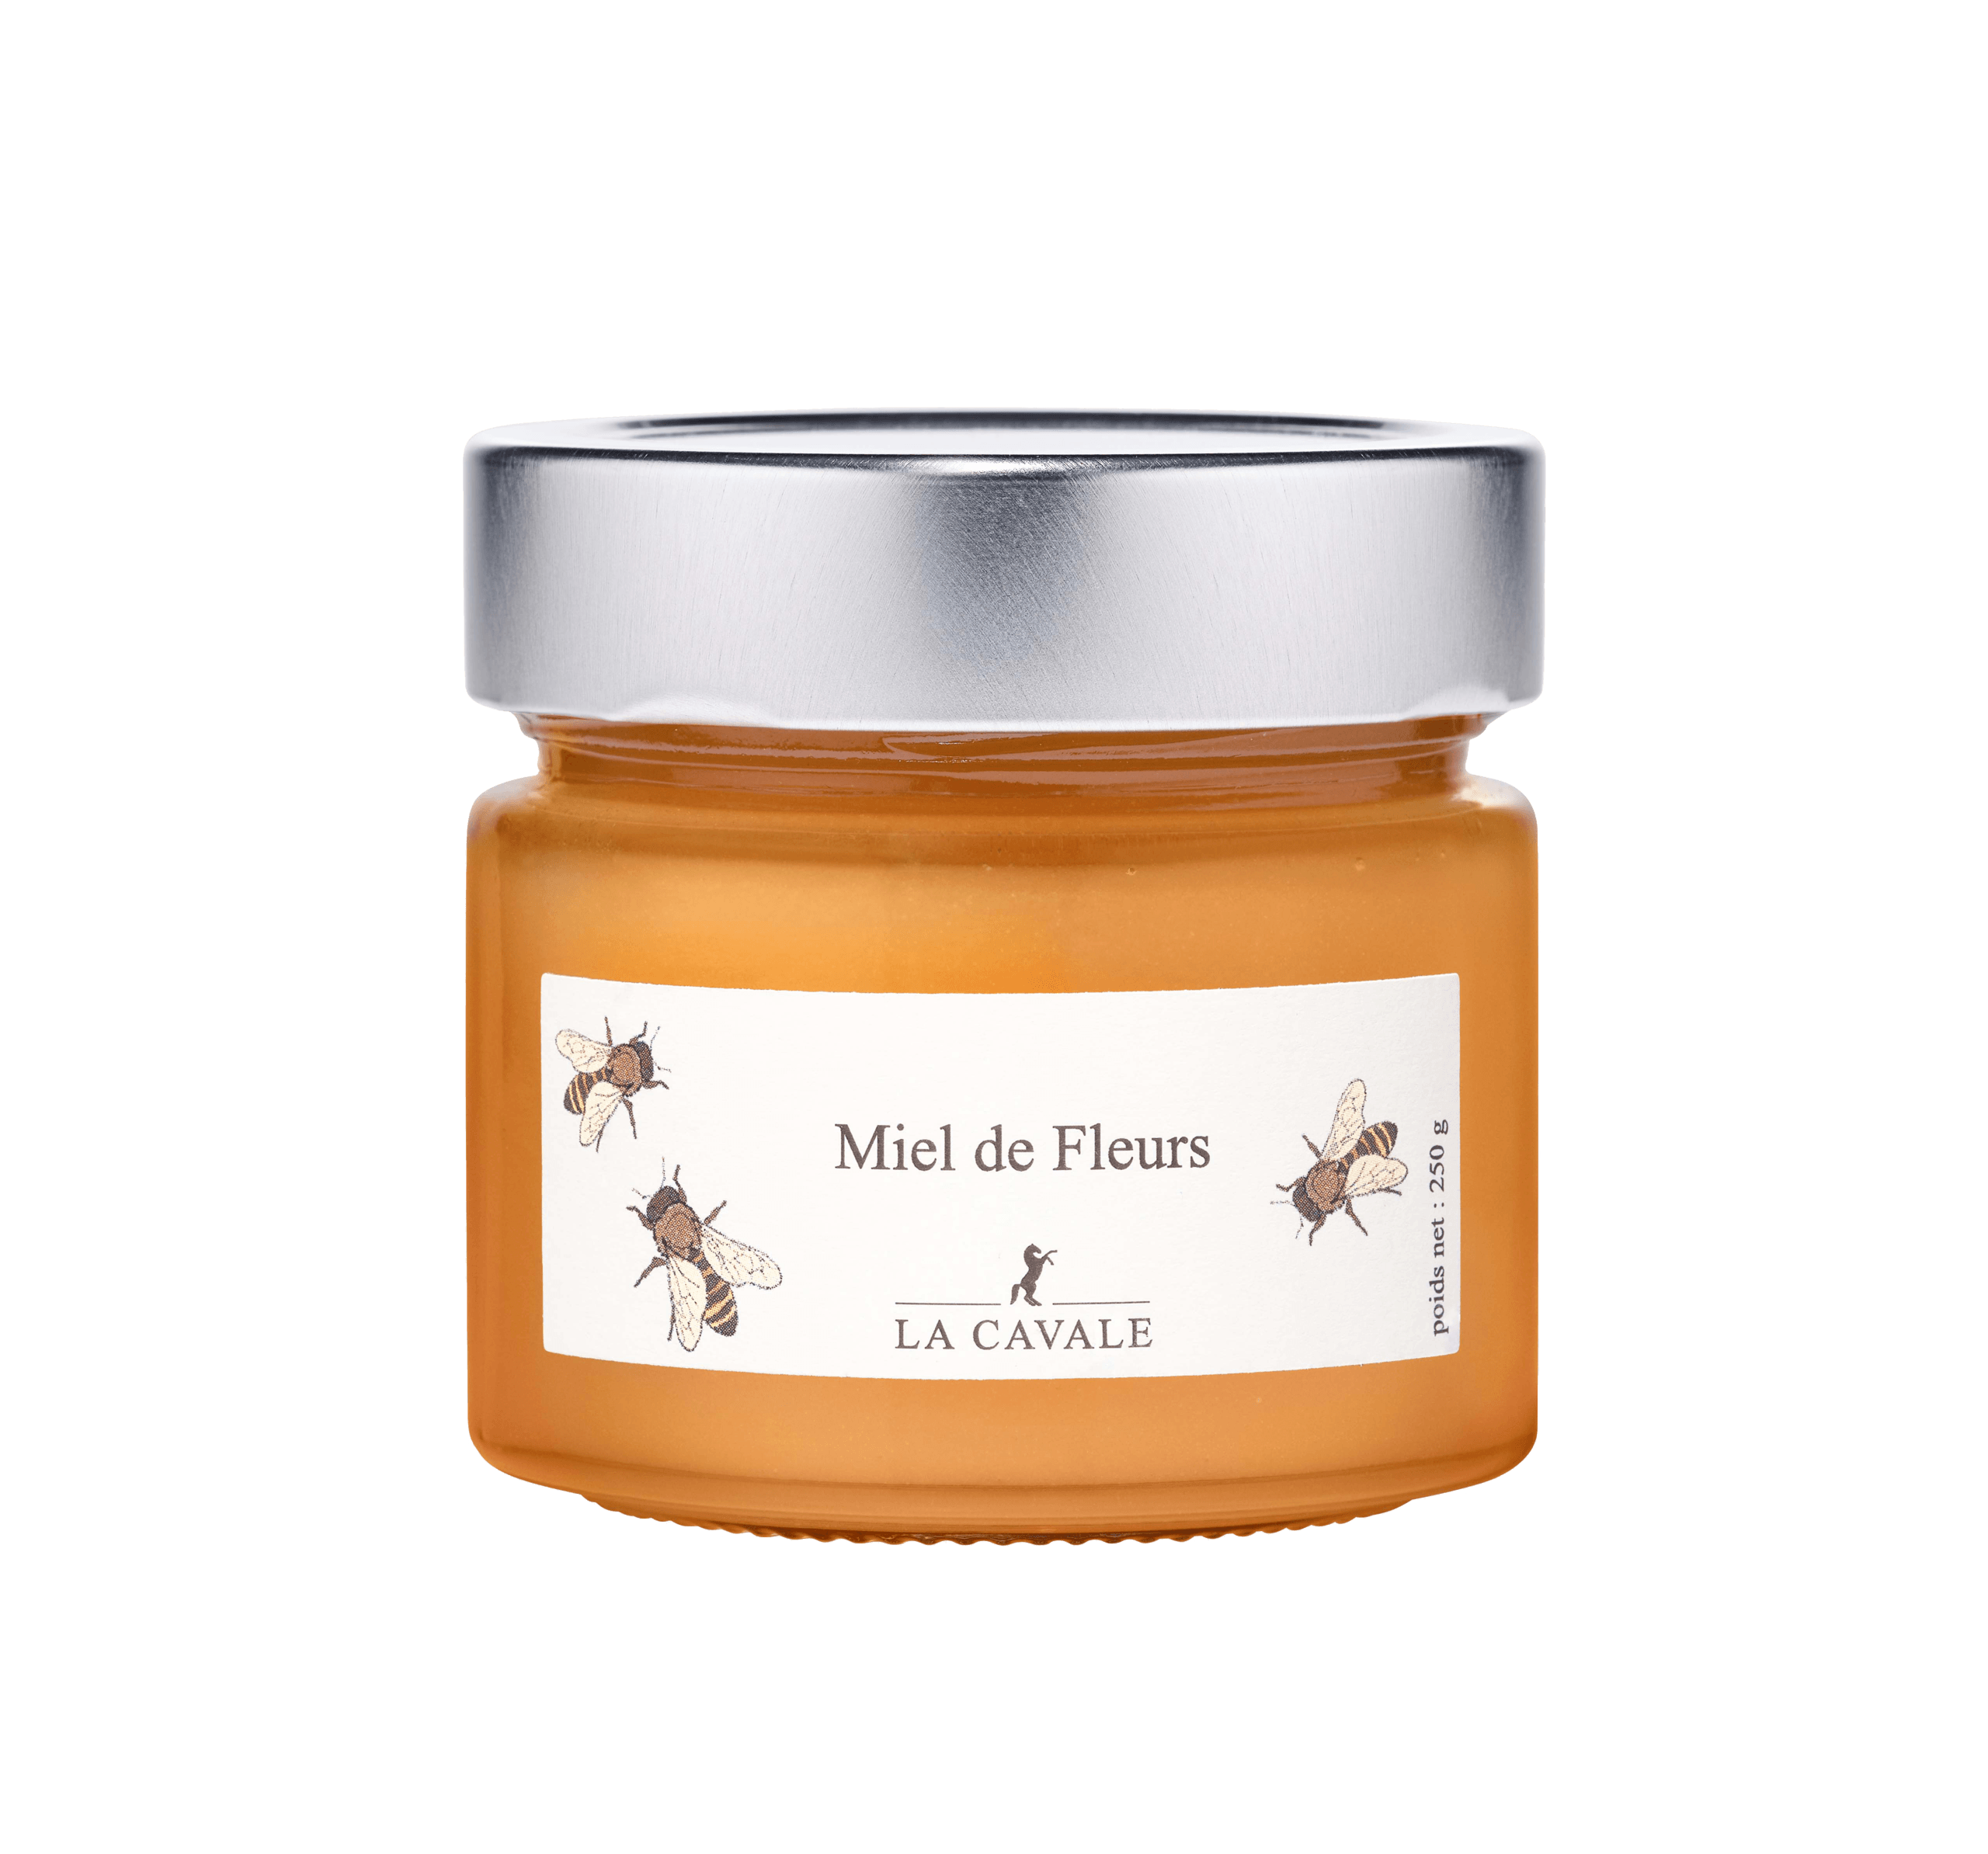 Miel de fleurs - Domaine La Cavale